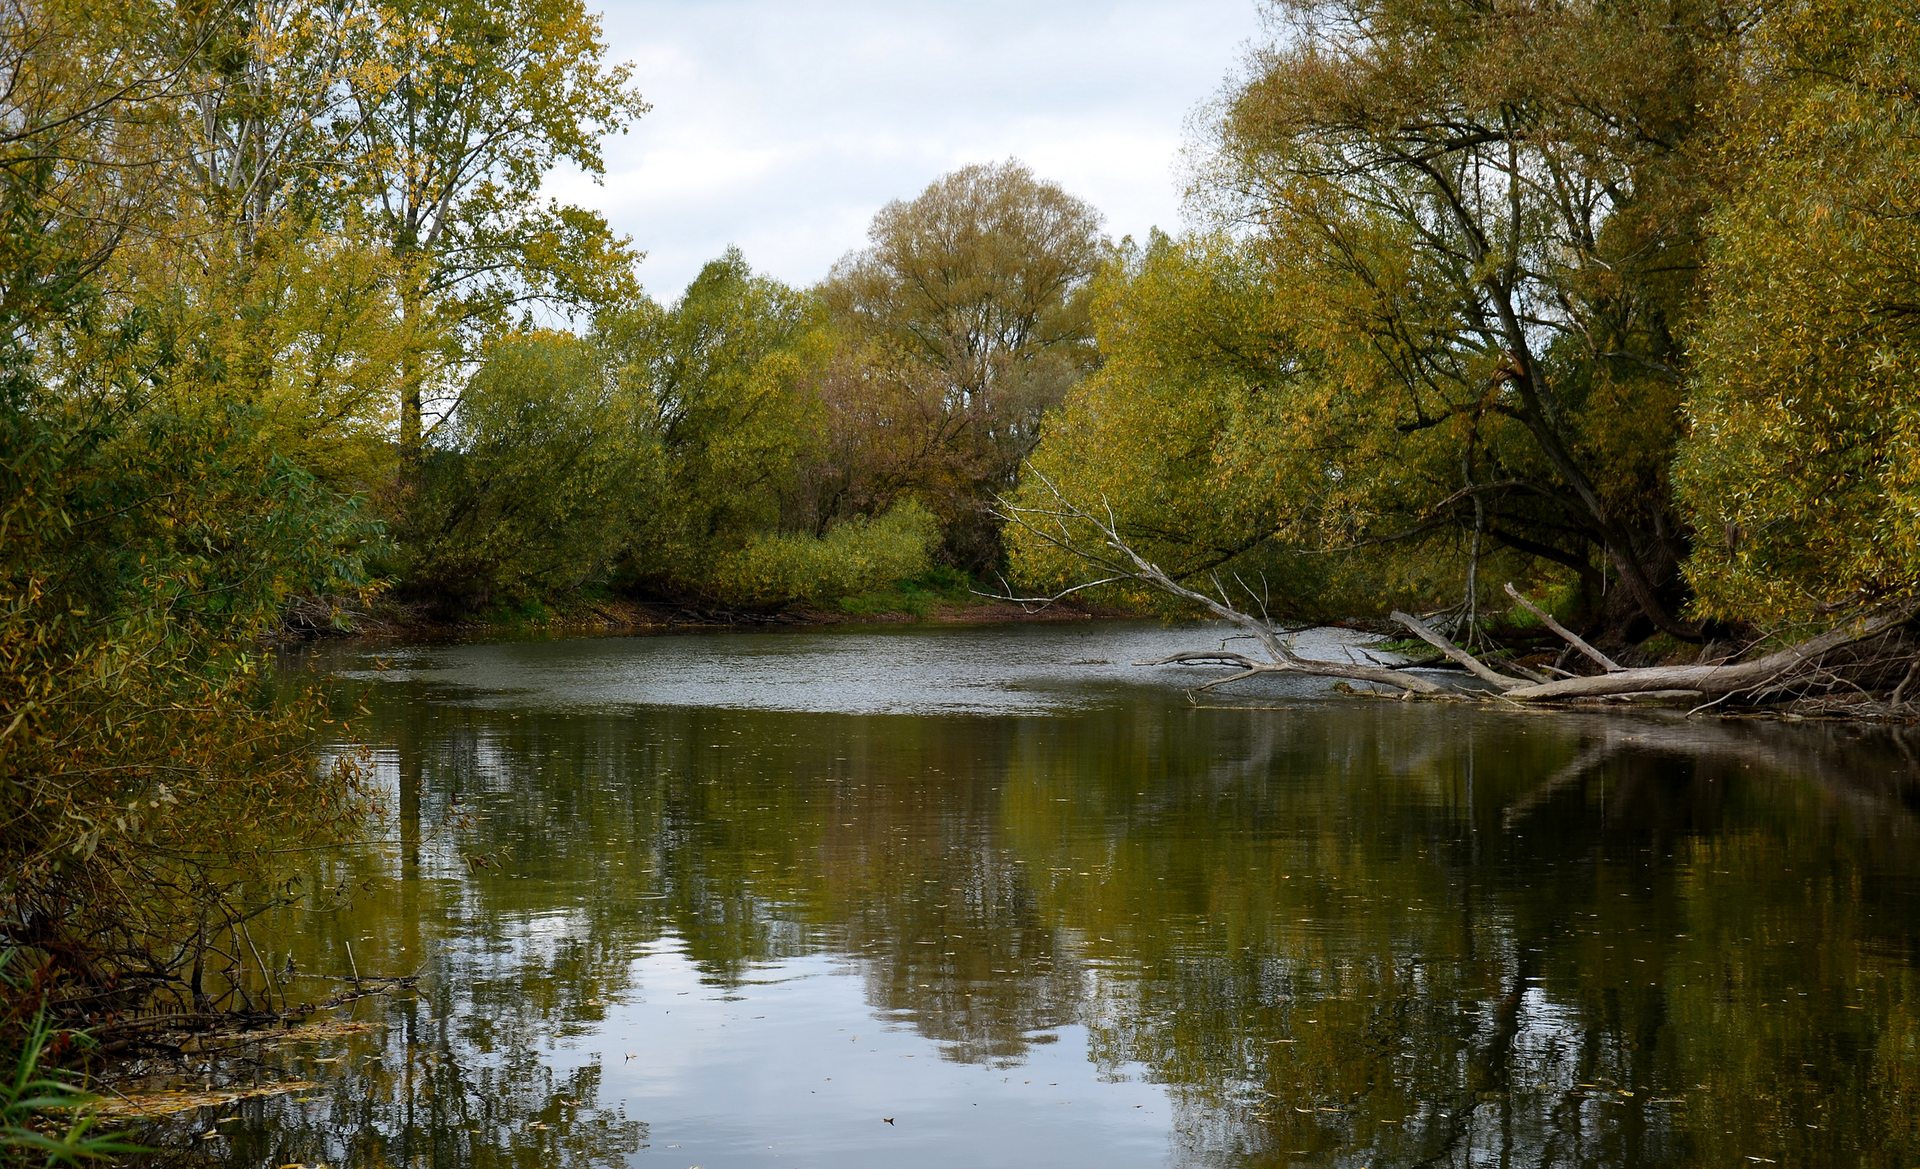 Fotografia przedstawia szeroko płynącą rzekę. Jej brzegi są porośnięte drzewami, odbijającymi się w wodzie. To rezerwat wodny Rzeka Drwęca w województwie warmińsko – mazurskim. Jest miejscem ochrony rzadkich gatunków ryb.